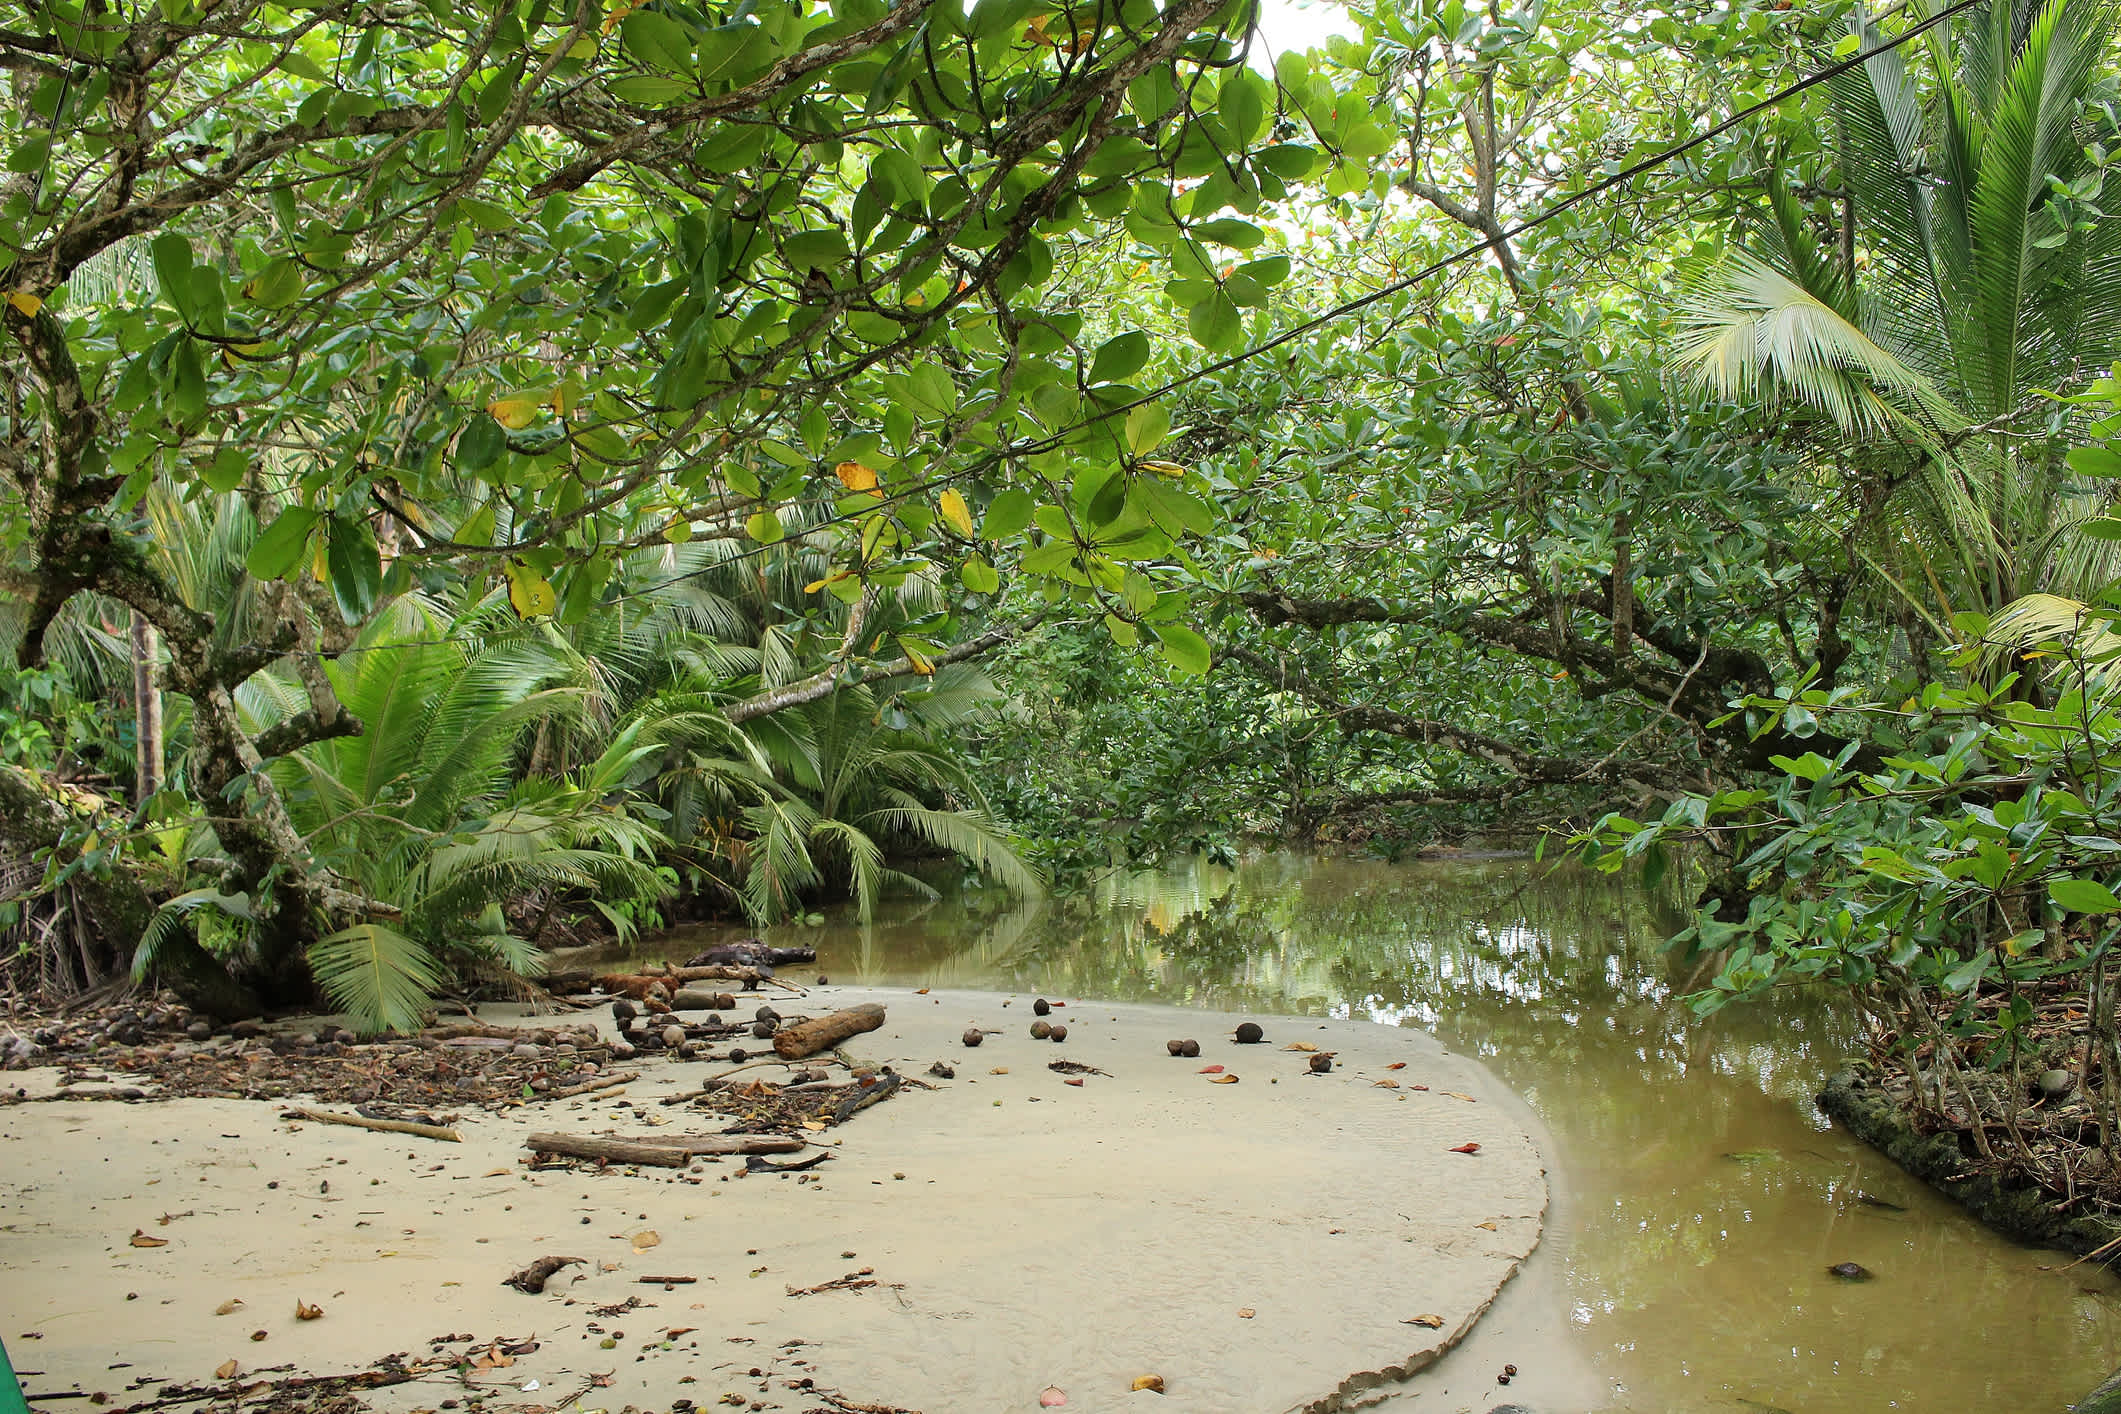 Wasserfläche und üppiges Grün im Cahuita Nationalpark, Costa Rica.

